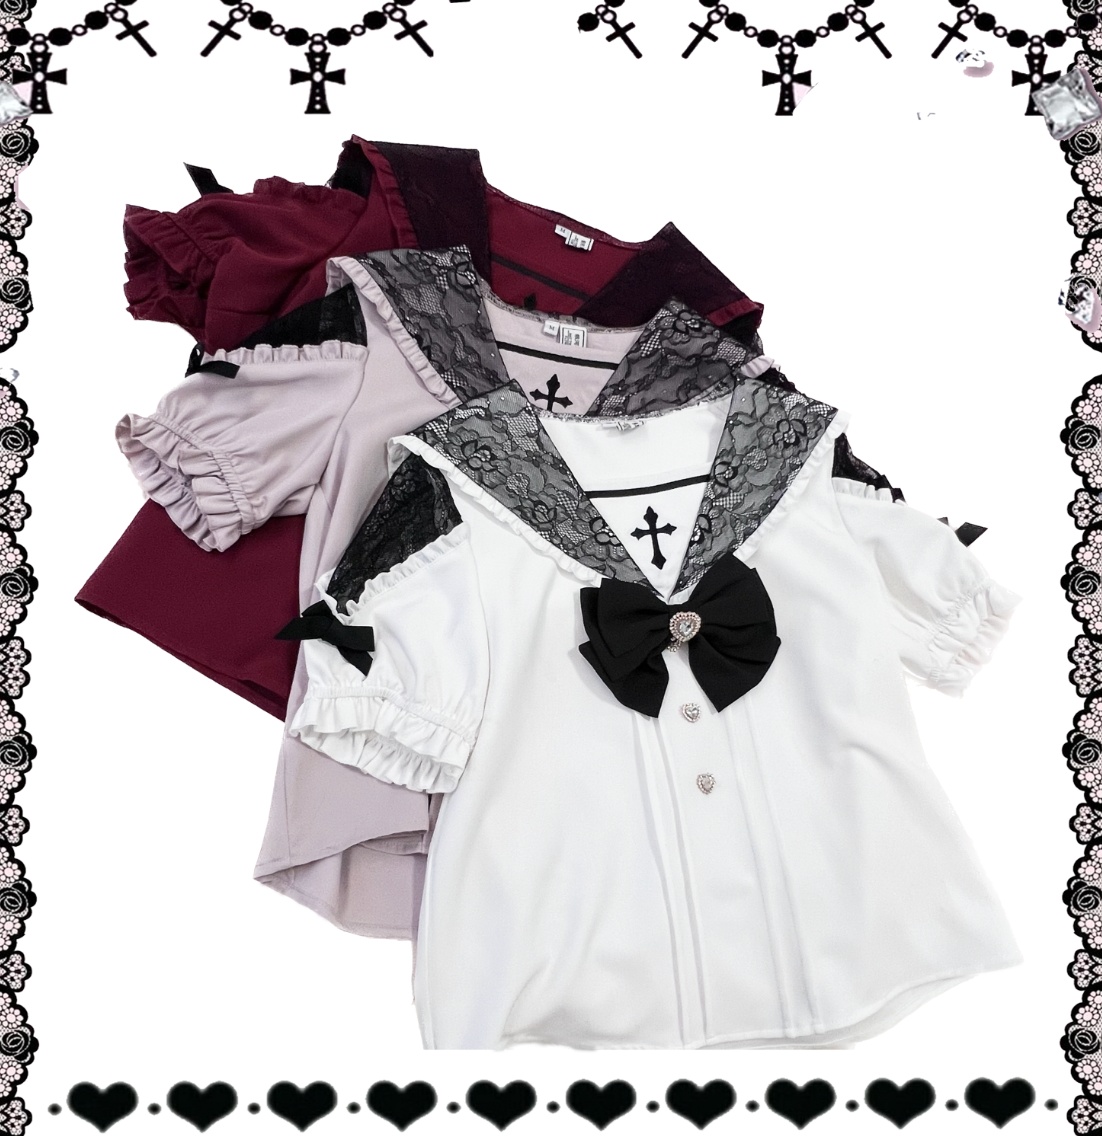 Jirai Kei Cross Blouse High Waist Skirt Short Sleeve Shirt 37118:552552